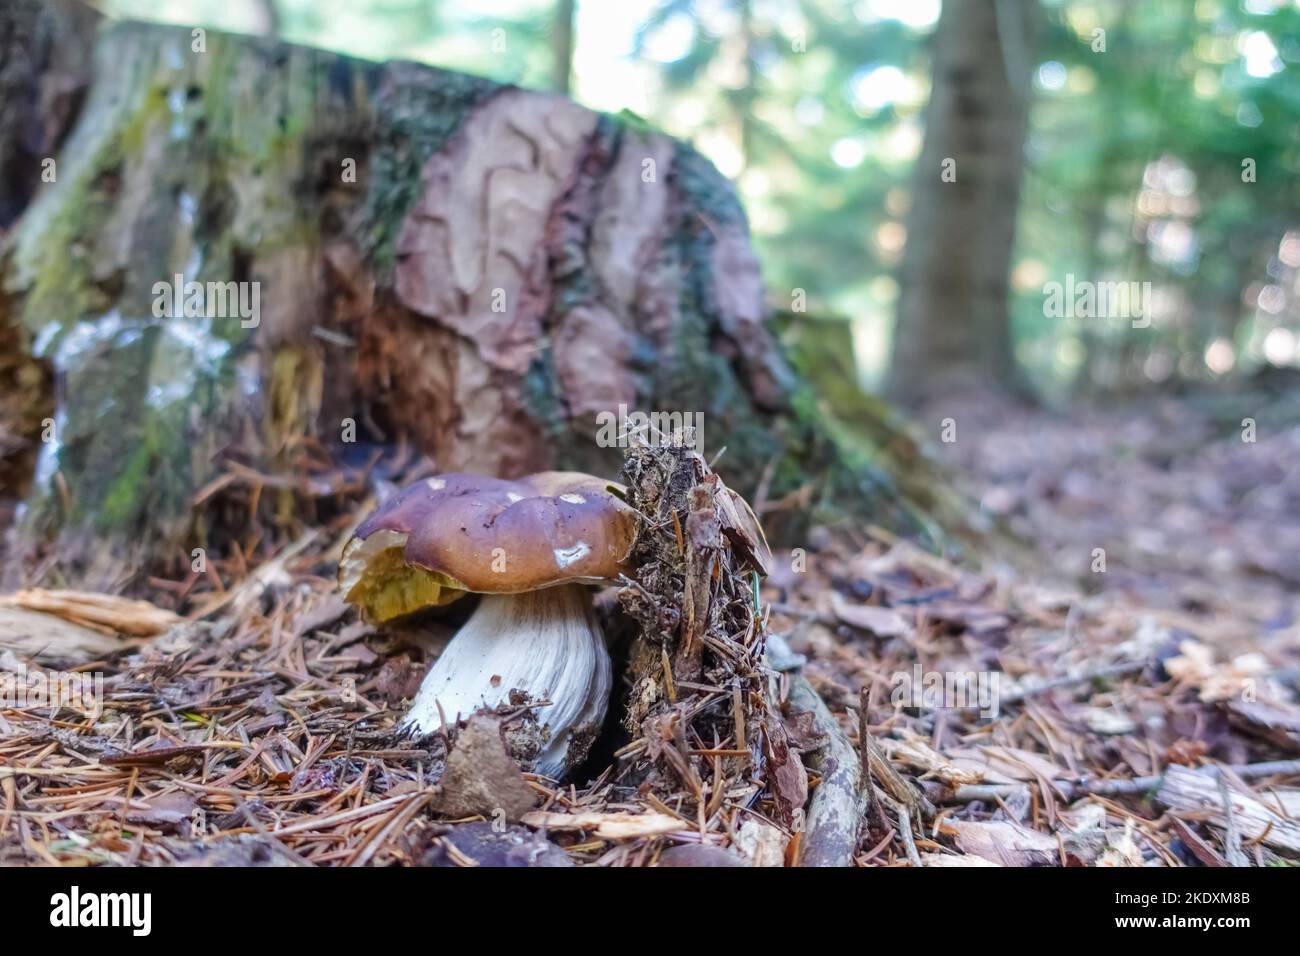 single tasty boletus mushroom between needles in autumn Stock Photo